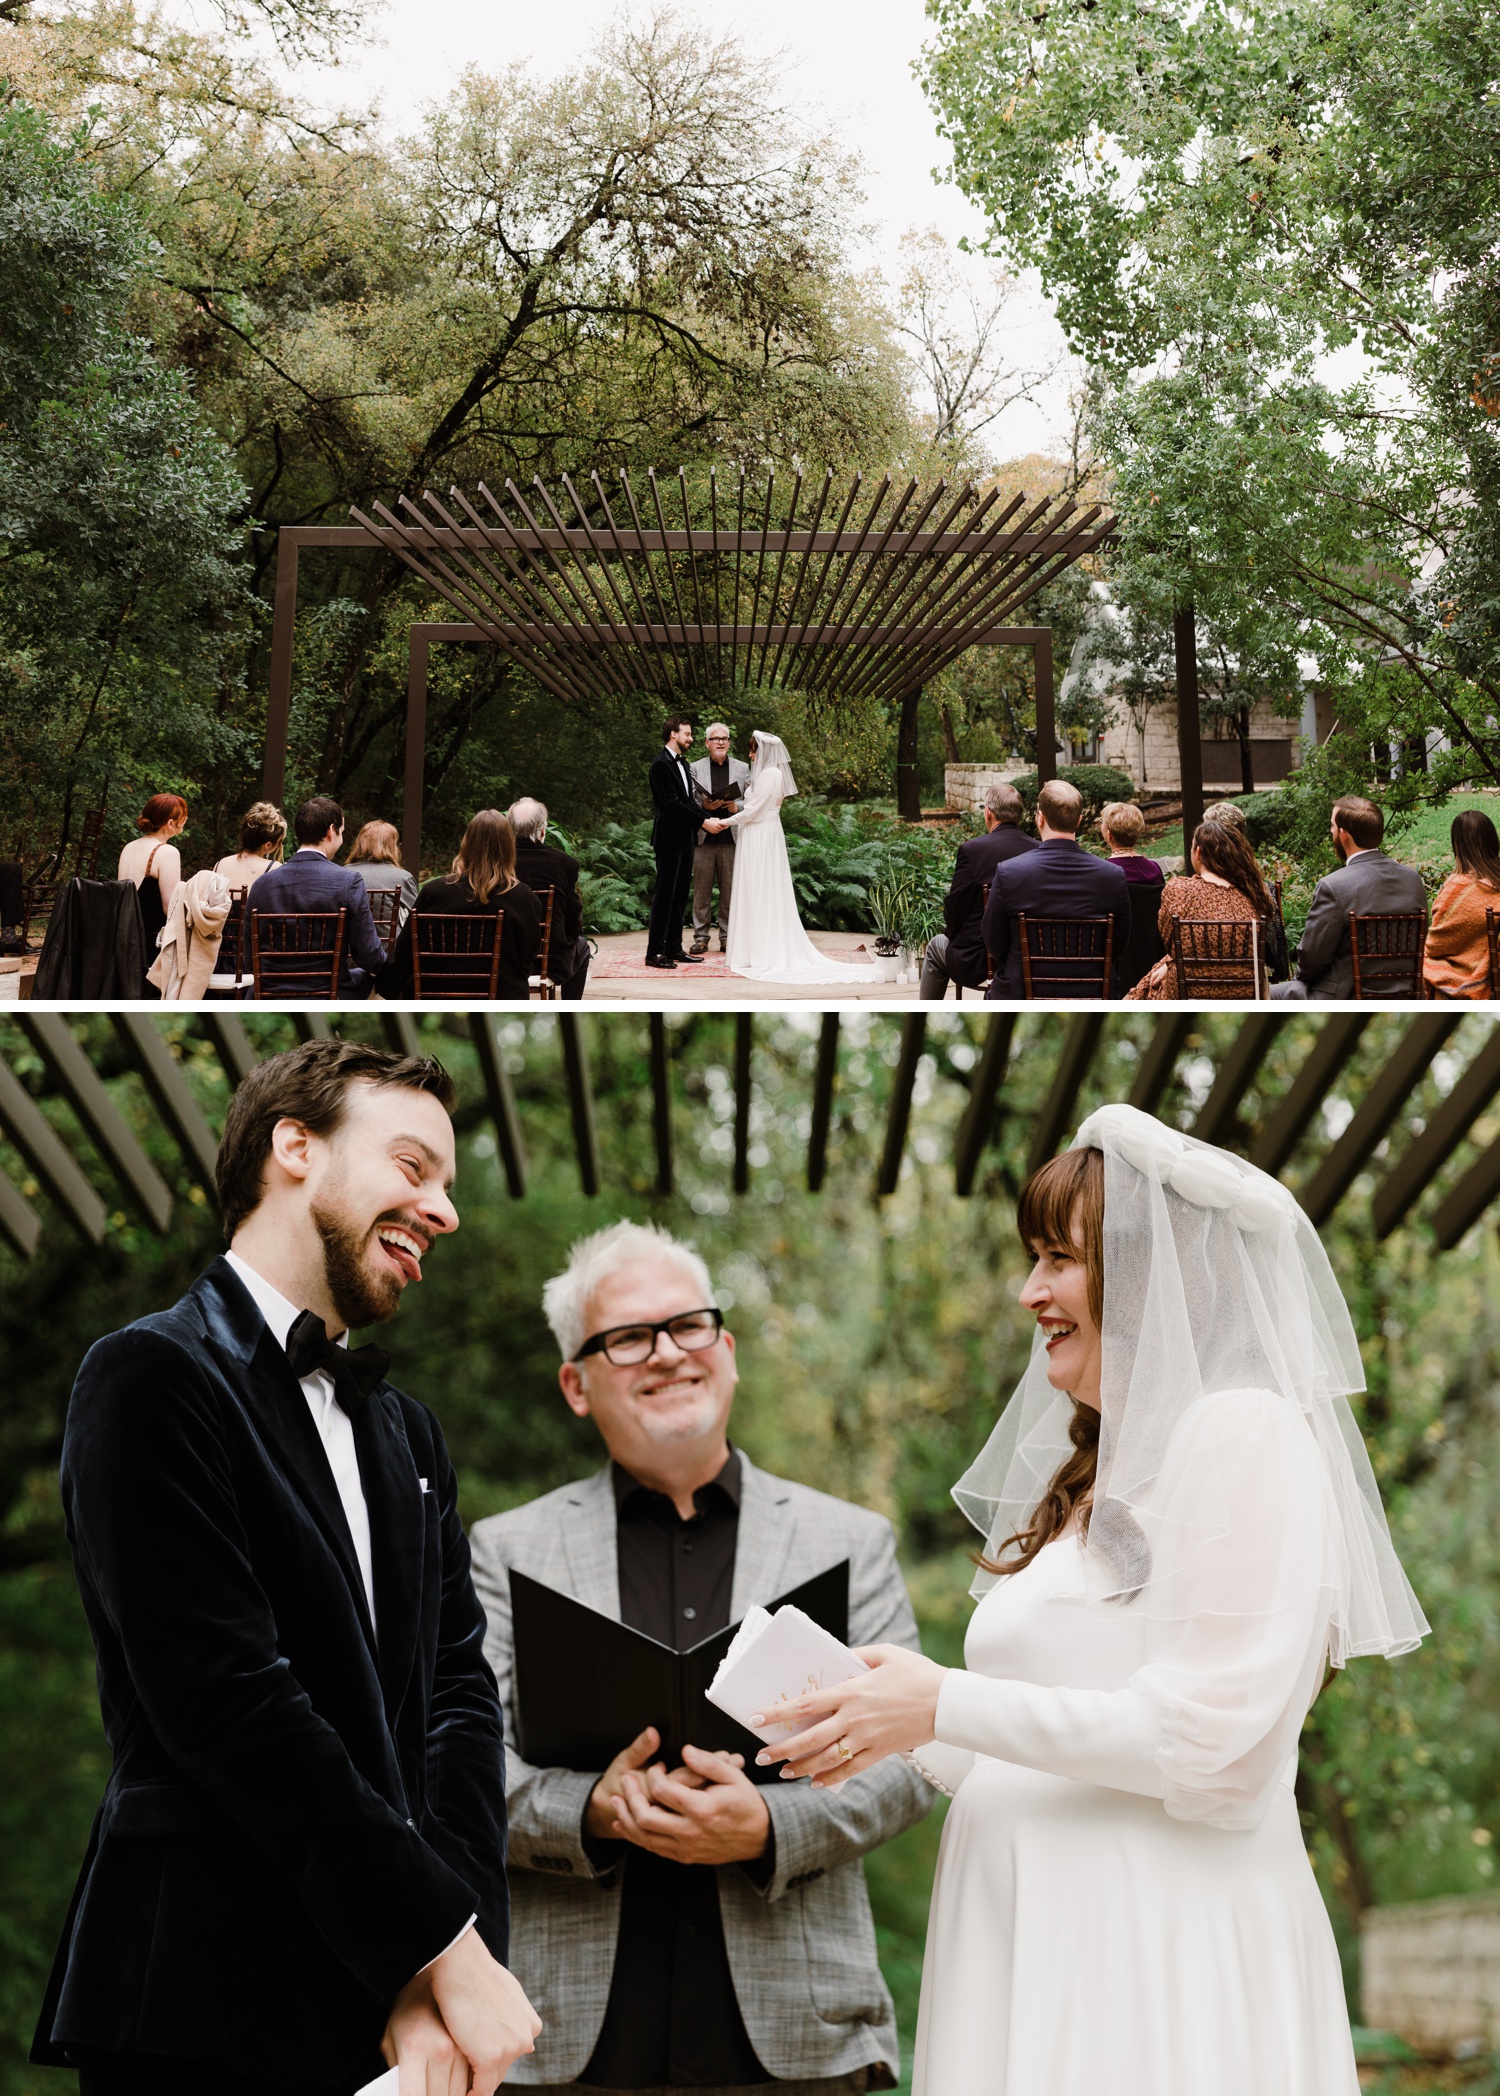 Wedding ceremony at UMLAUF Sculpture Garden